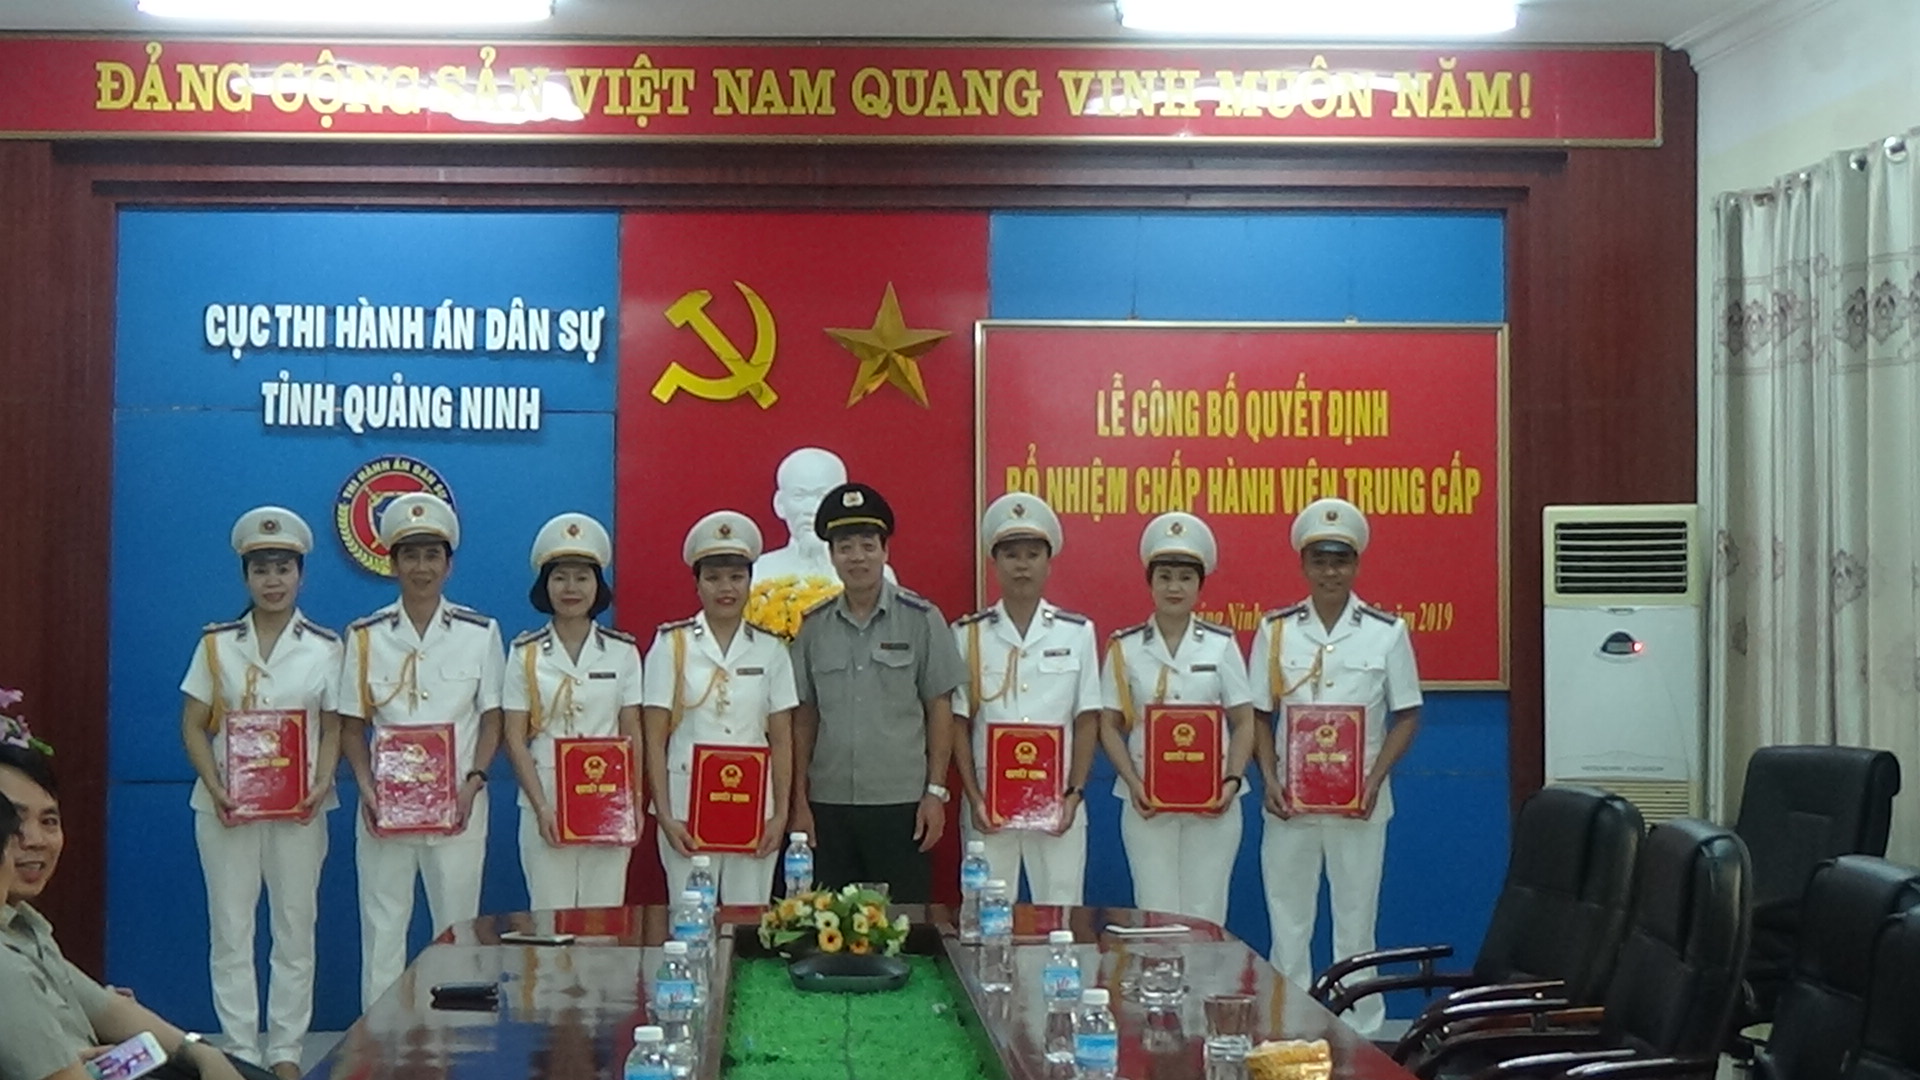 Cục Thi hành án dân sự tỉnh Quảng Ninh tổ chức Lễ công bố Quyết định bổ nhiệm Chấp hành viên trung cấp